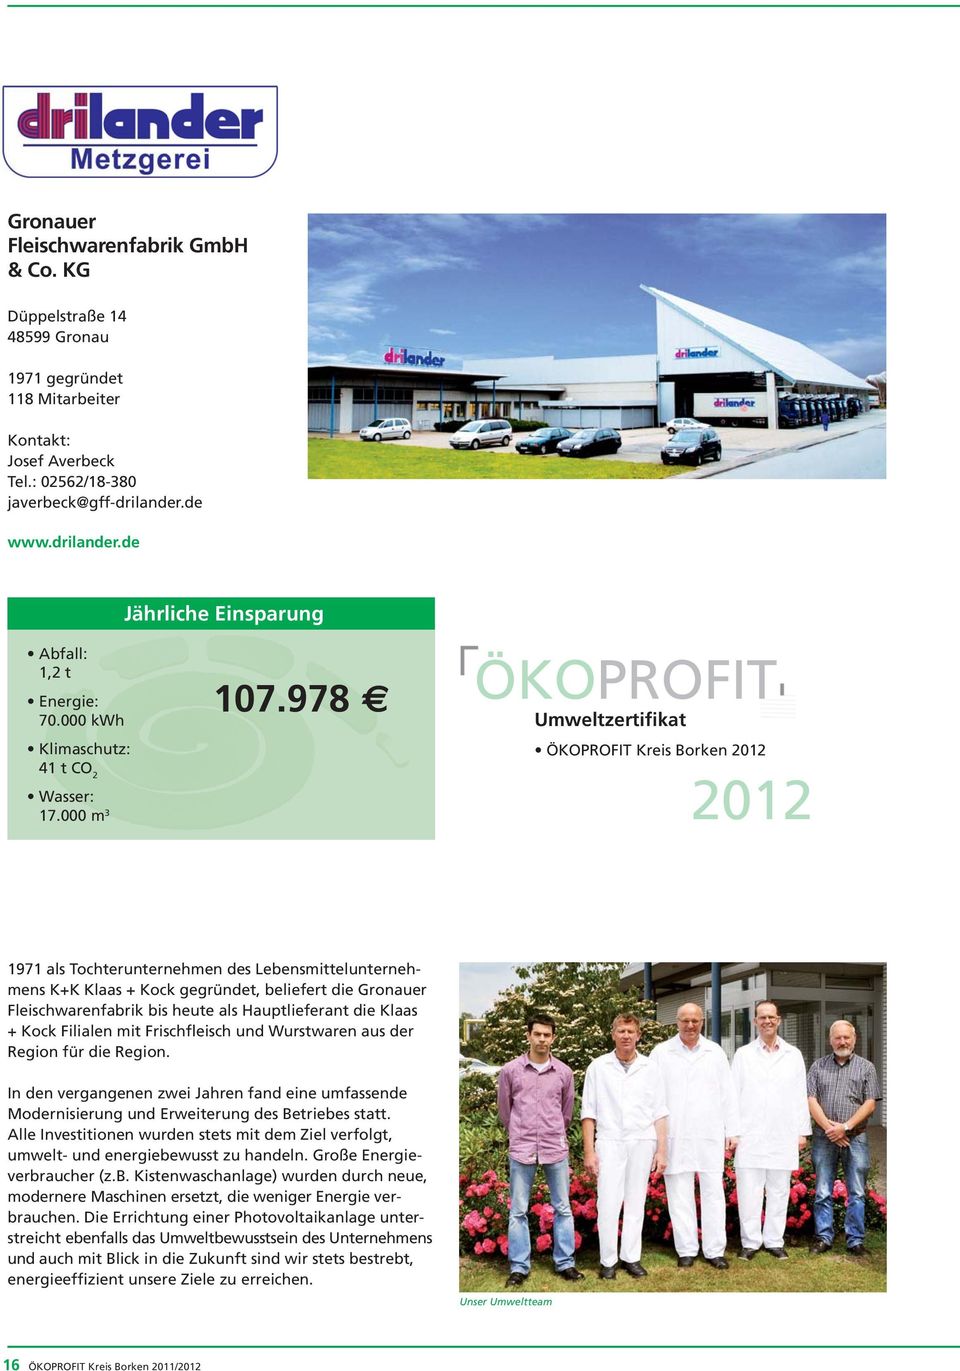 978 ÖKOPROFIT Umweltzertifikat ÖKOPROFIT Kreis Borken 2012 2012 1971 als Tochterunternehmen des Lebensmittelunternehmens K+K Klaas + Kock gegründet, beliefert die Gronauer Fleischwarenfabrik bis